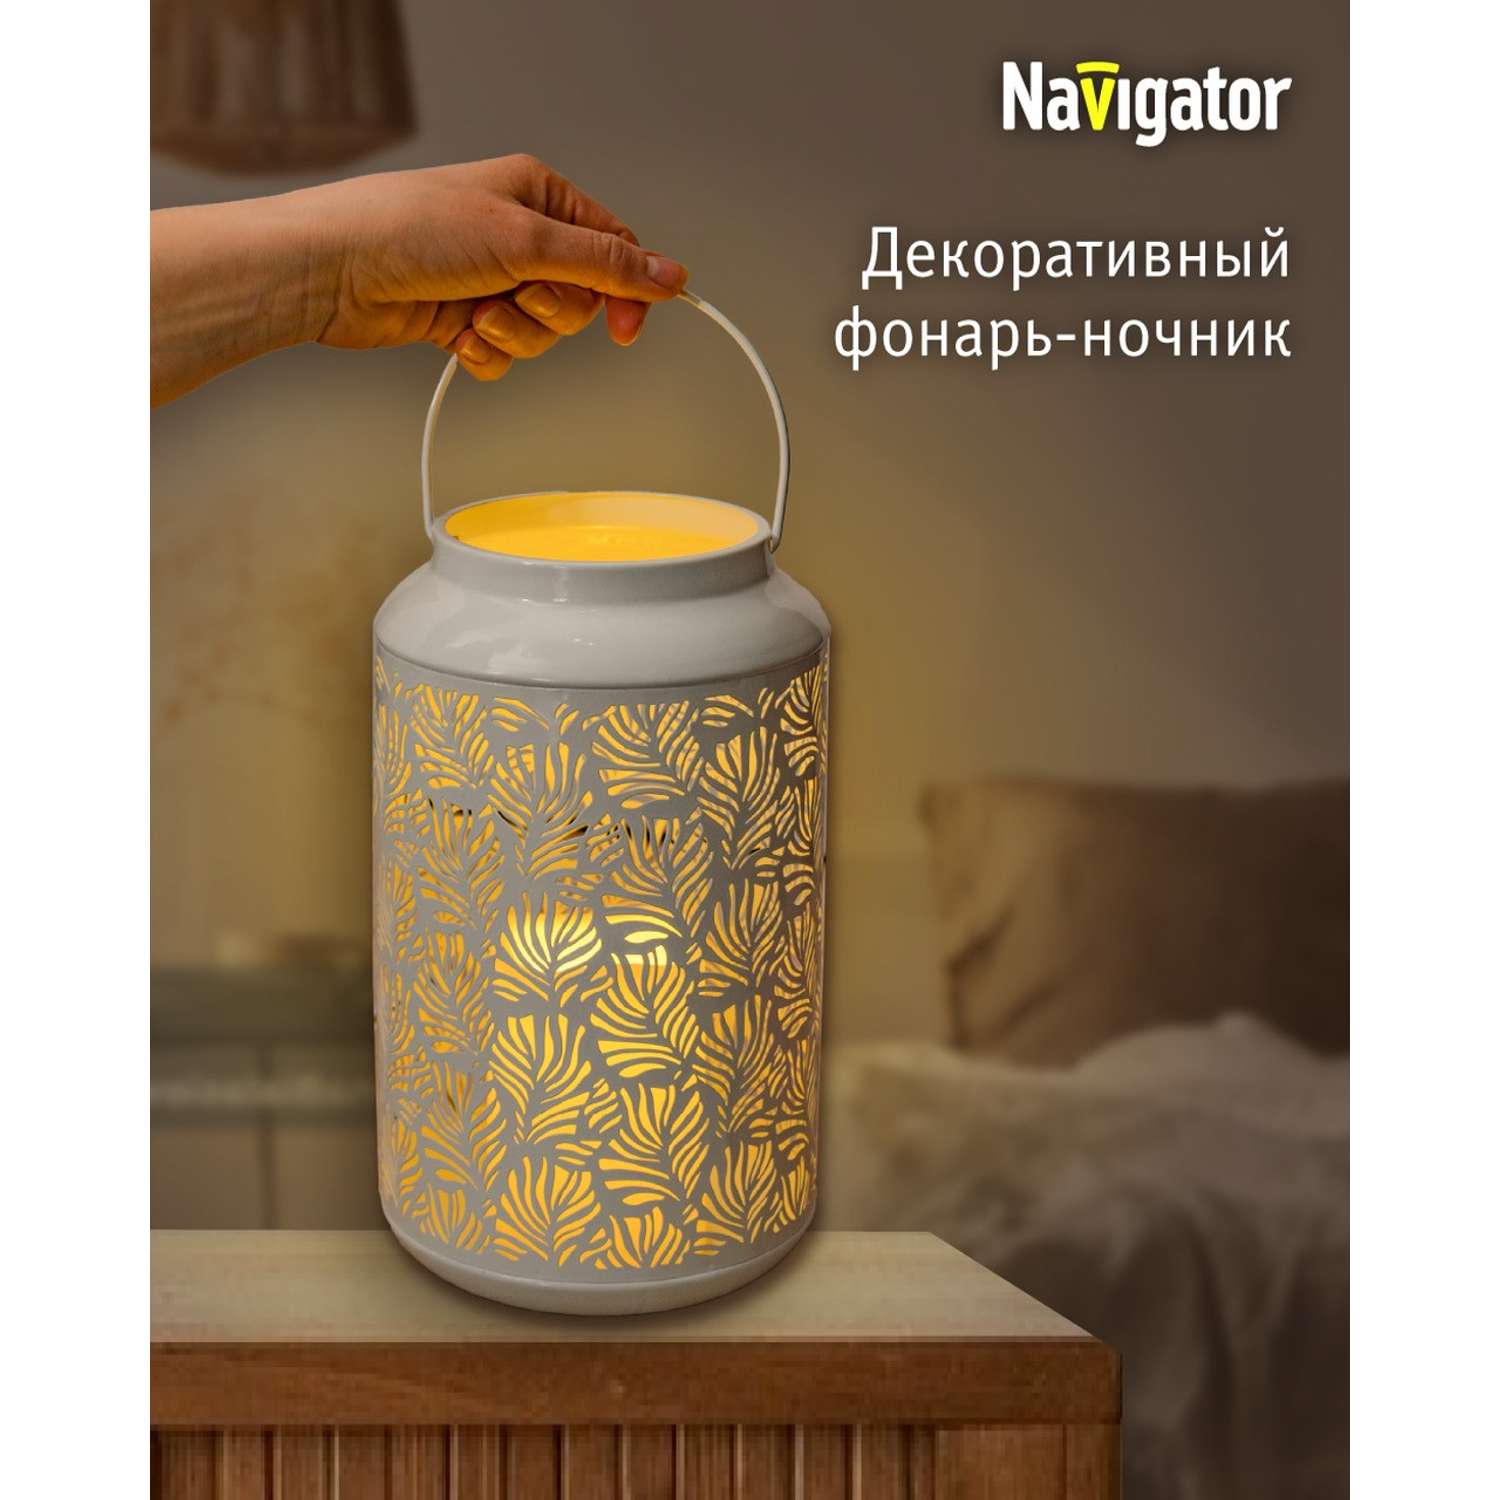 Декоративный светильник-ночник NaVigator светодиодный для детской комнаты узор флора - фото 1